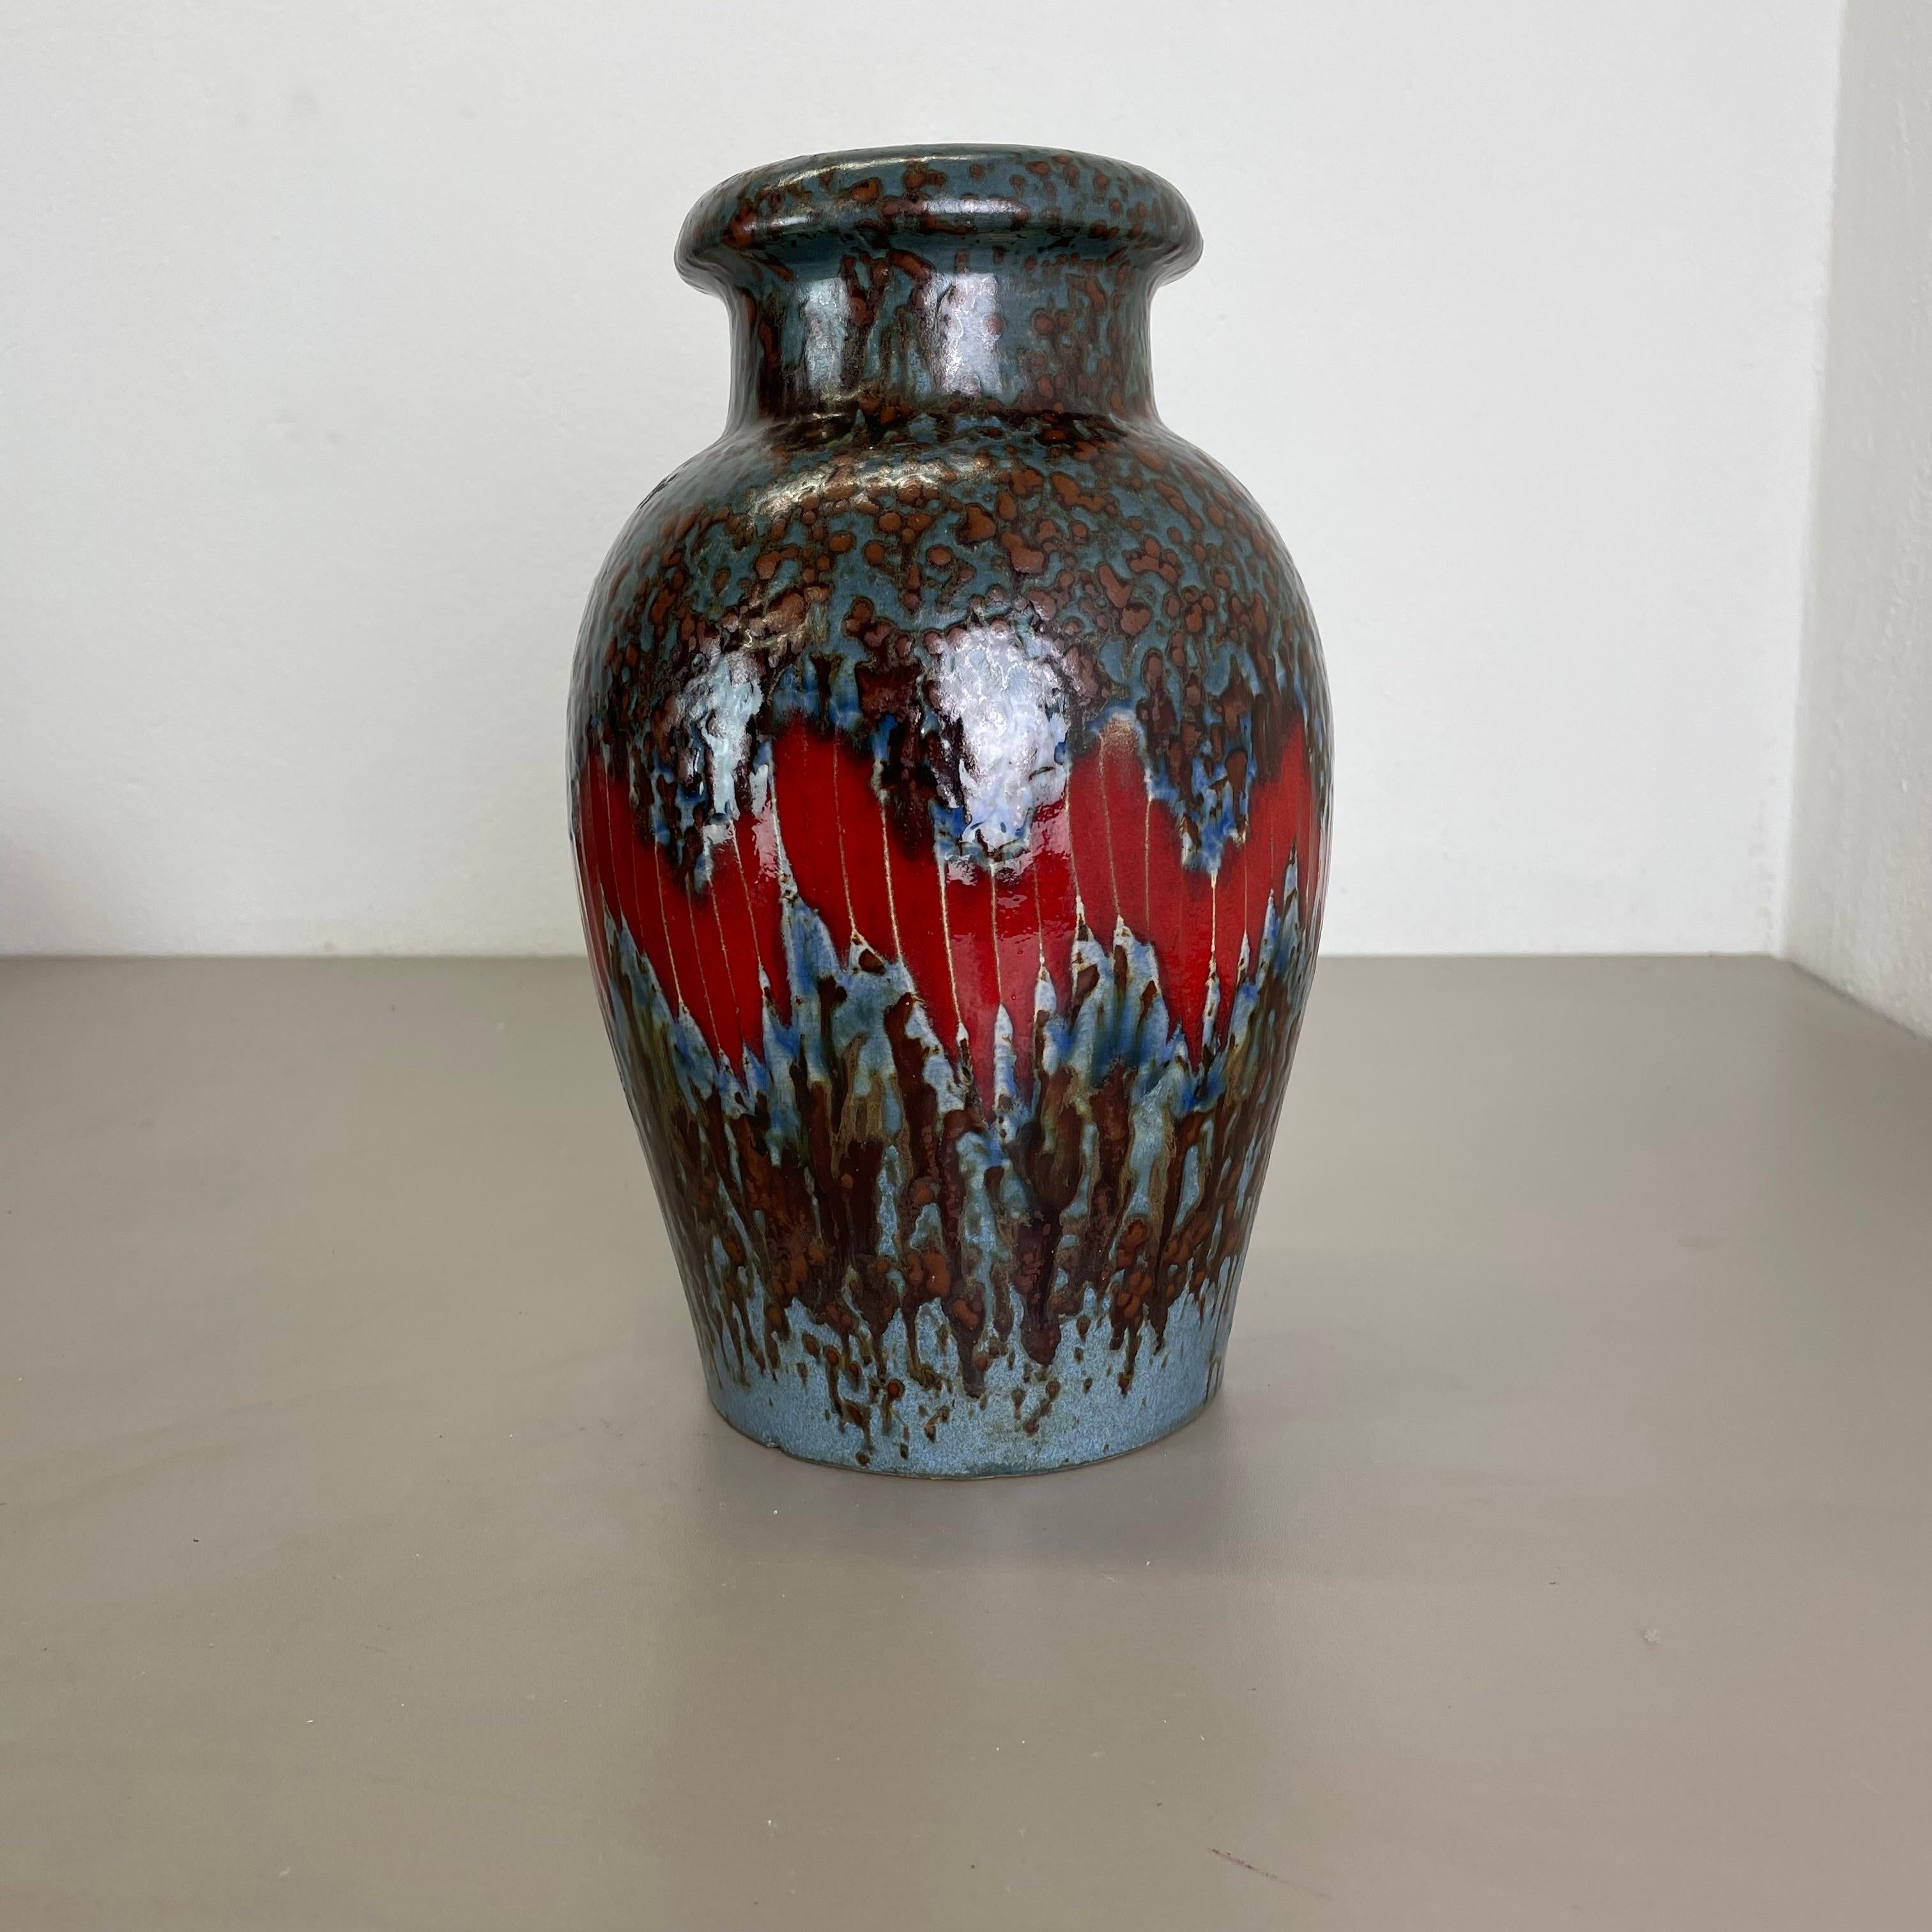 Article :

Vase d'art en lave grasse super rare LORA DECOR.



Producteur :

Scheurich, Allemagne



Décennie :

1970s




Ce vase vintage original a été produit dans les années 1970 en Allemagne par Scheurich. Il est réalisé en poterie céramique en